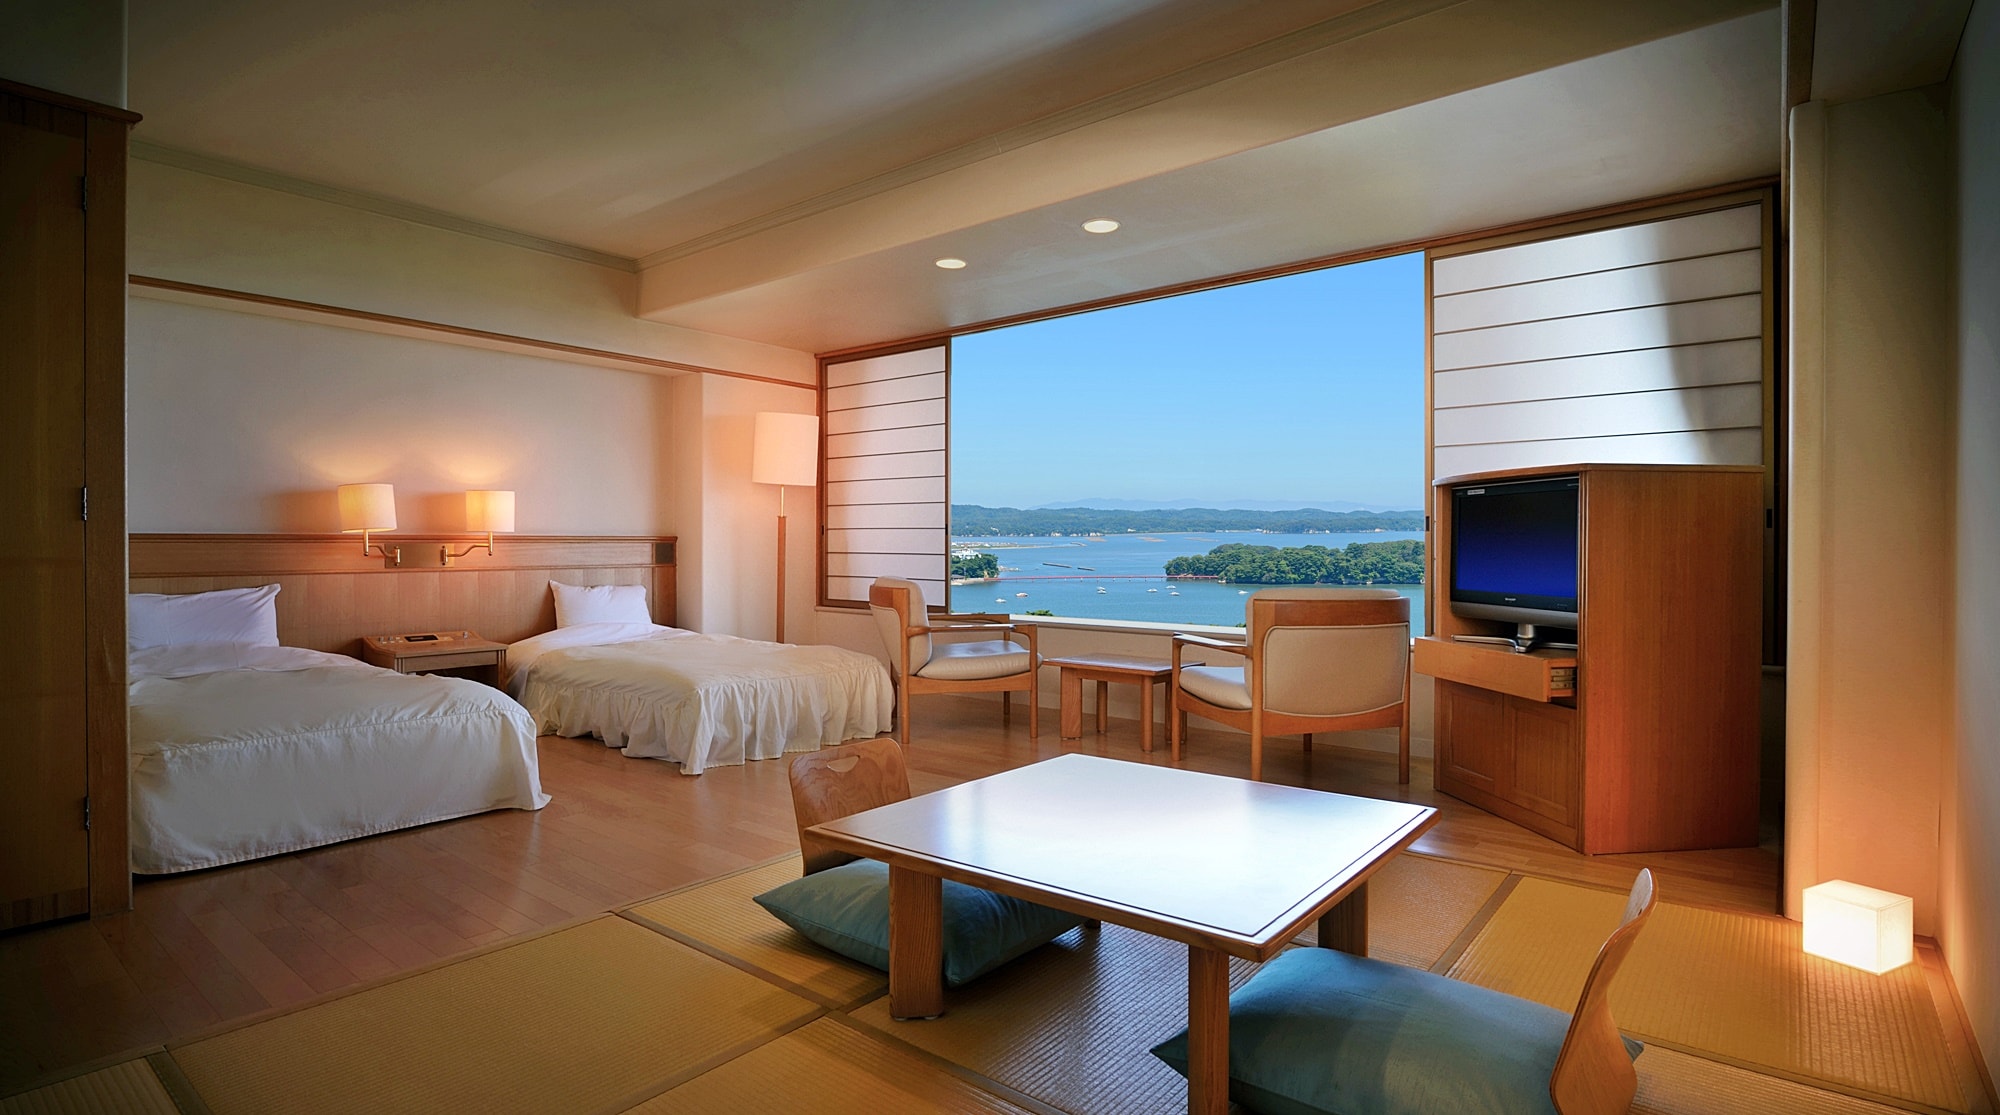 【바다 쪽 / 정취가 다른 3 종류의 일본과 서양실】 송운각 - 더 · 송도! 아름다운 경관을 눈으로 즐길 수 있는 방입니다.